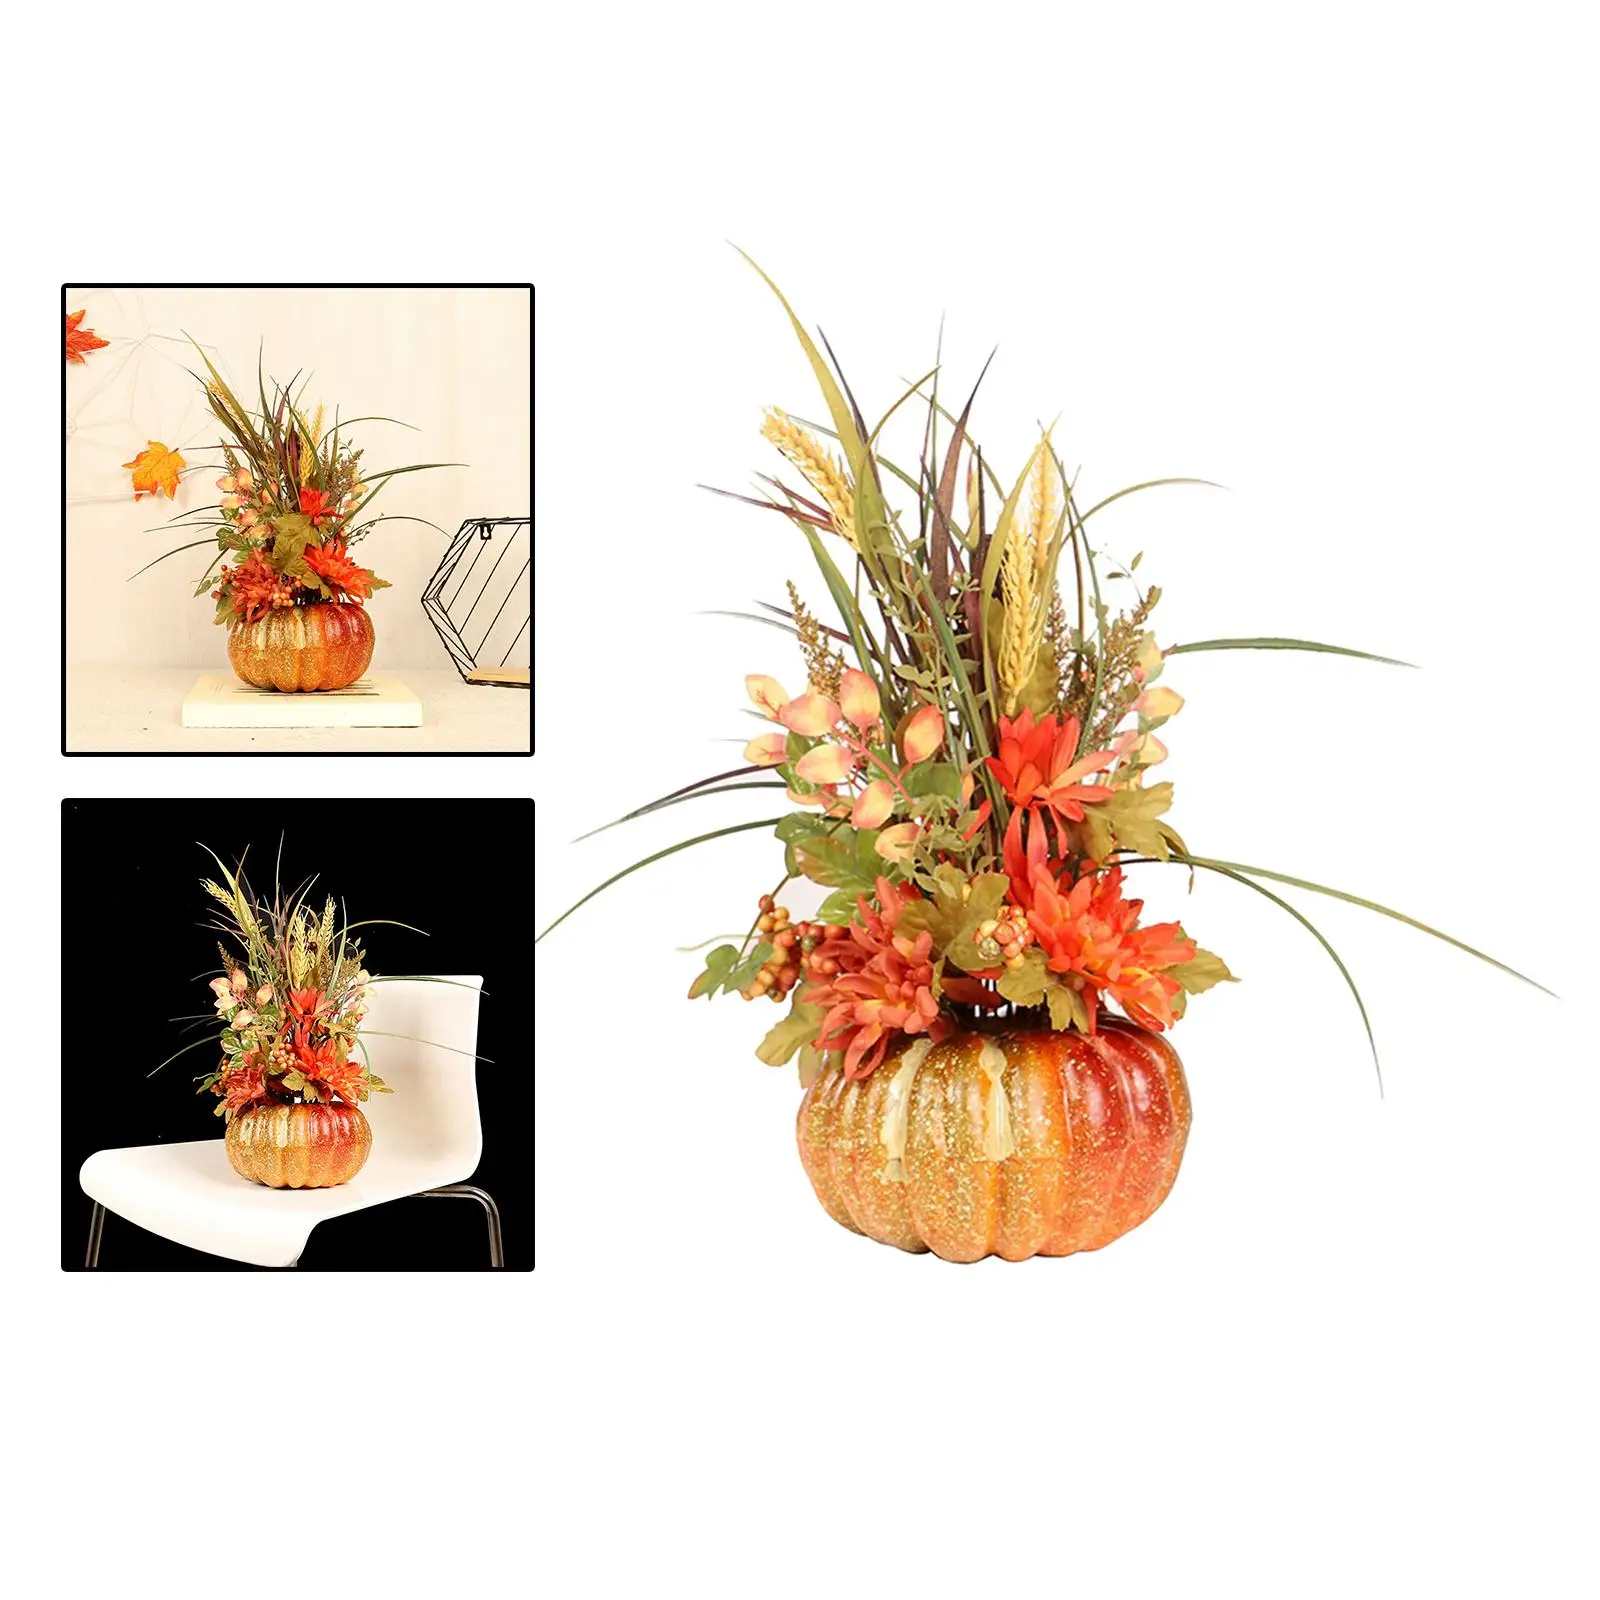 Halloween Artificial Pumpkin with Flowers, Centerpiece Floral Arrangement